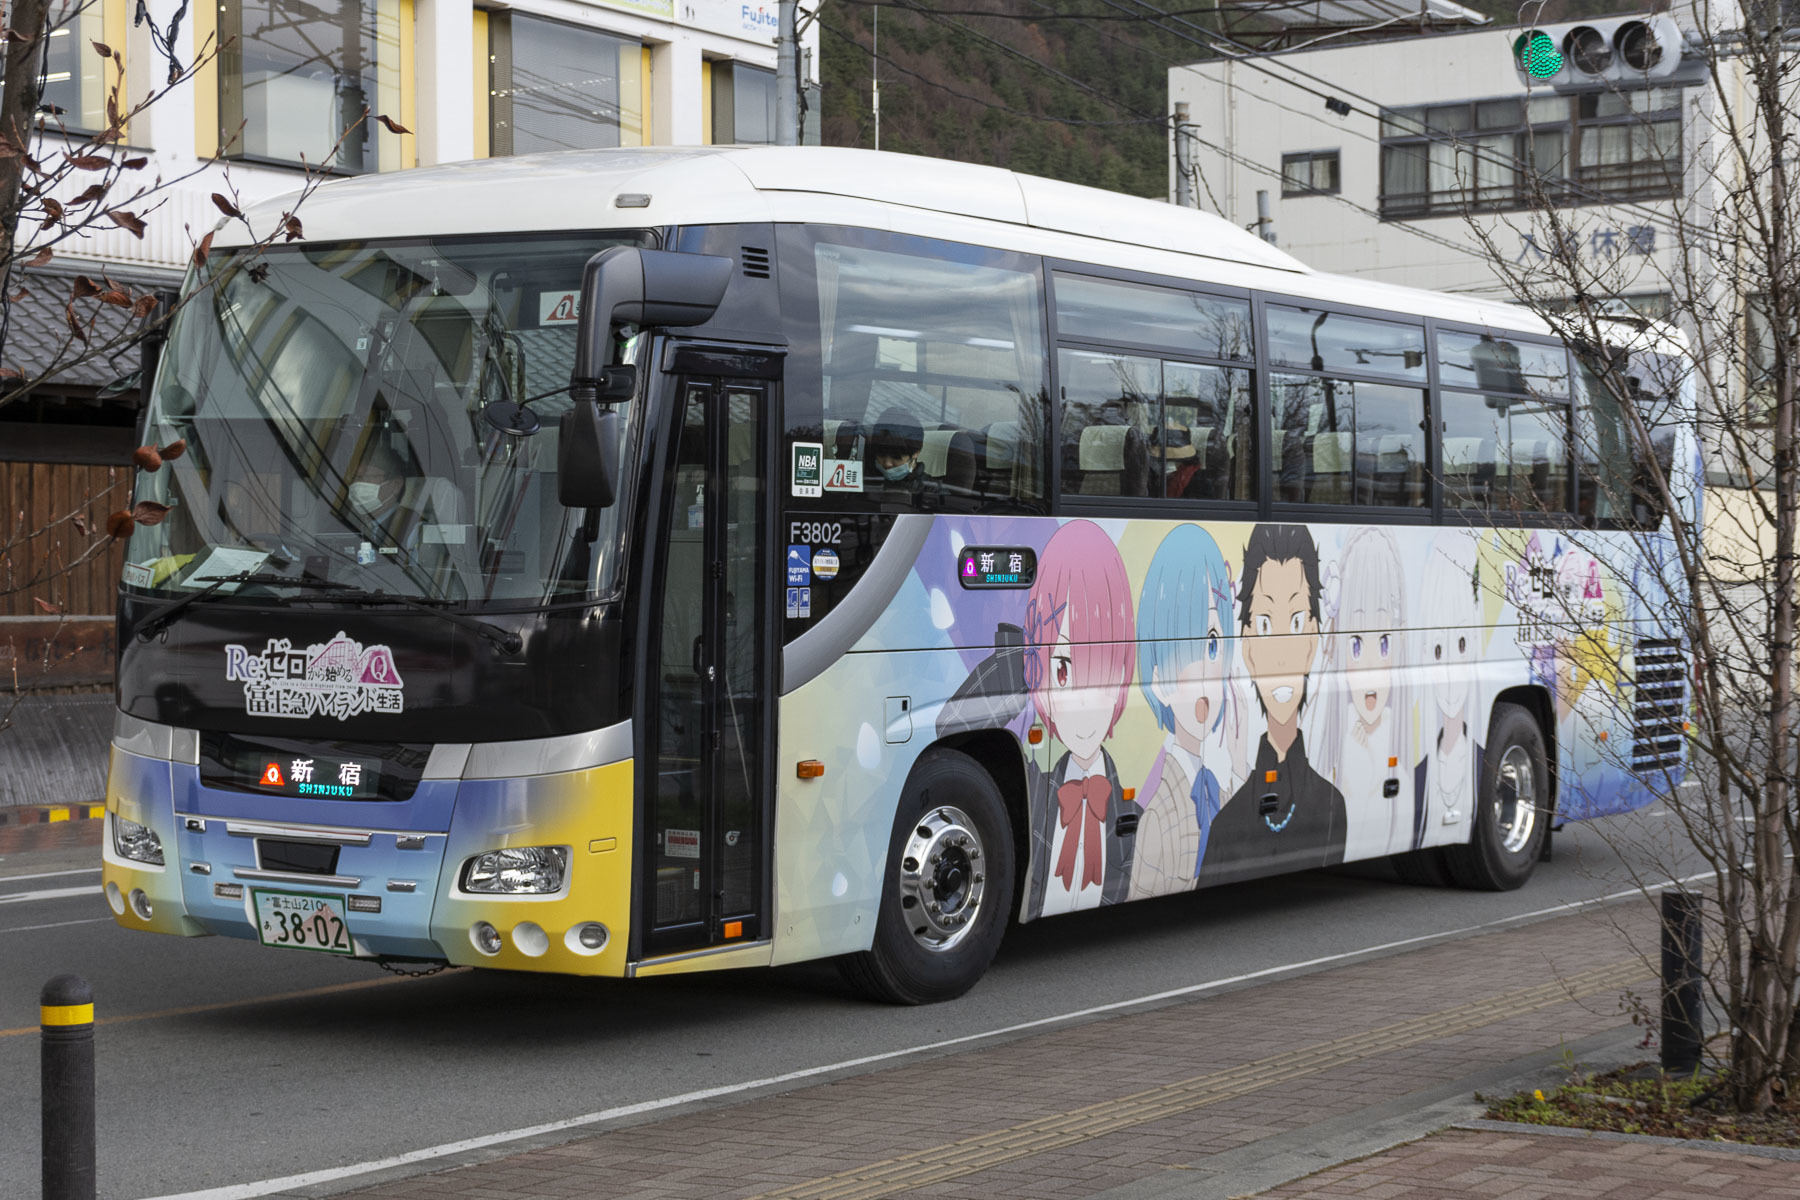 富士急バス / Re:ゼロから始める富士急ハイランド生活ラッピングバス_d0226909_16363788.jpg